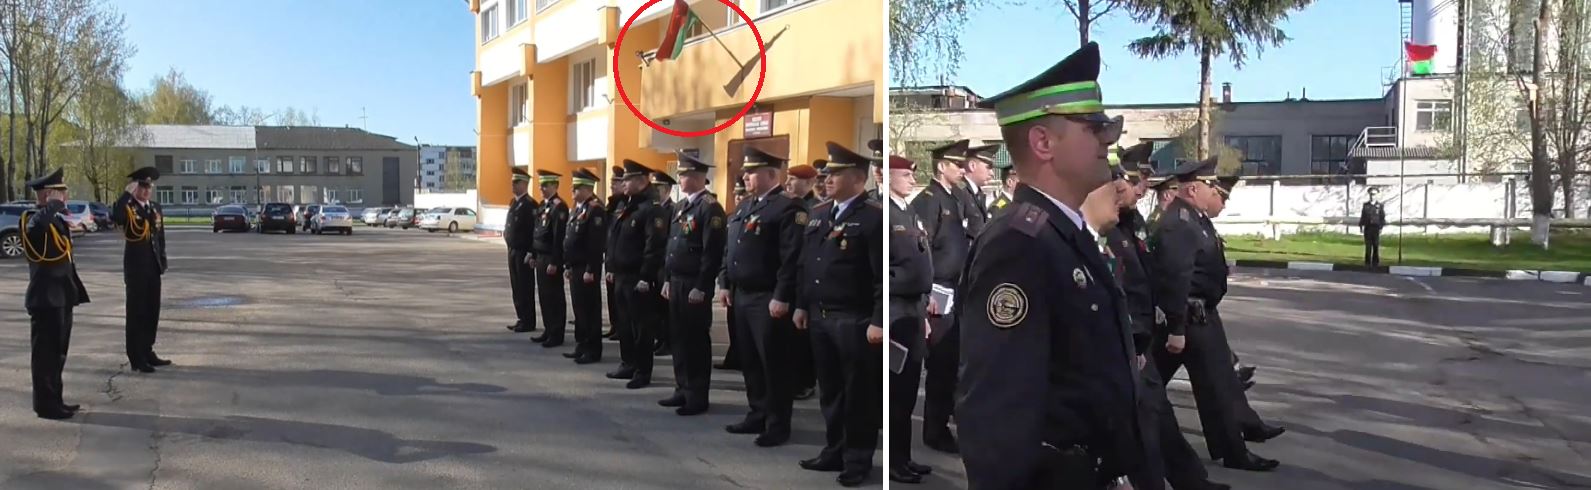 Больше флагов богу флагов: в Кричеве милиционеры торжественно открыли флагшток